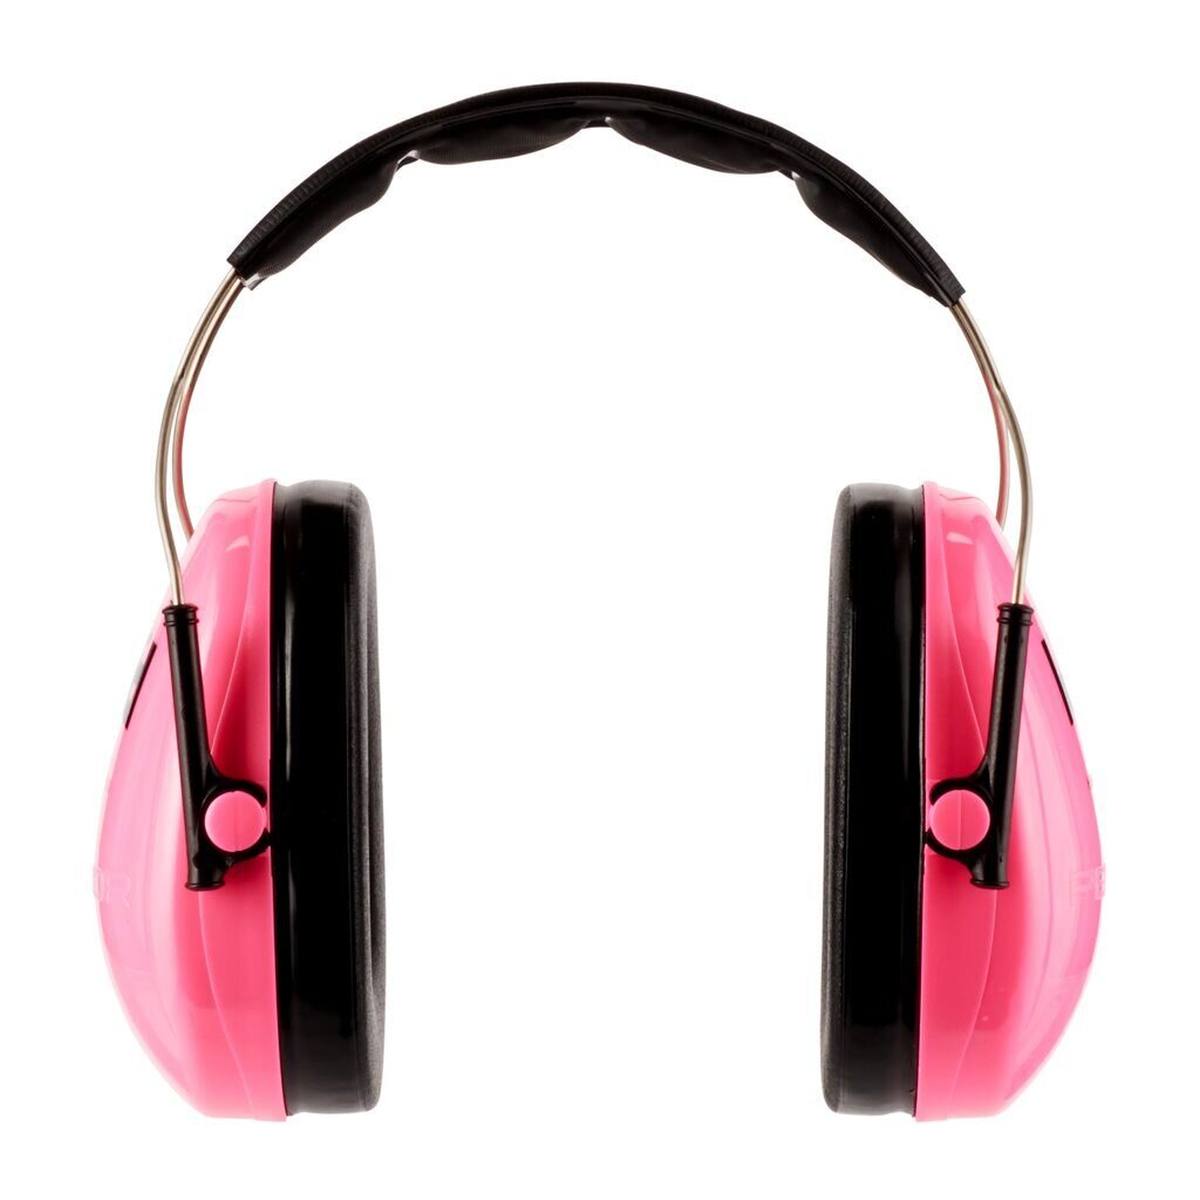 3M Peltor lasten kuulosuojaimet H510AK, vaaleanpunainen (87-98 dB).